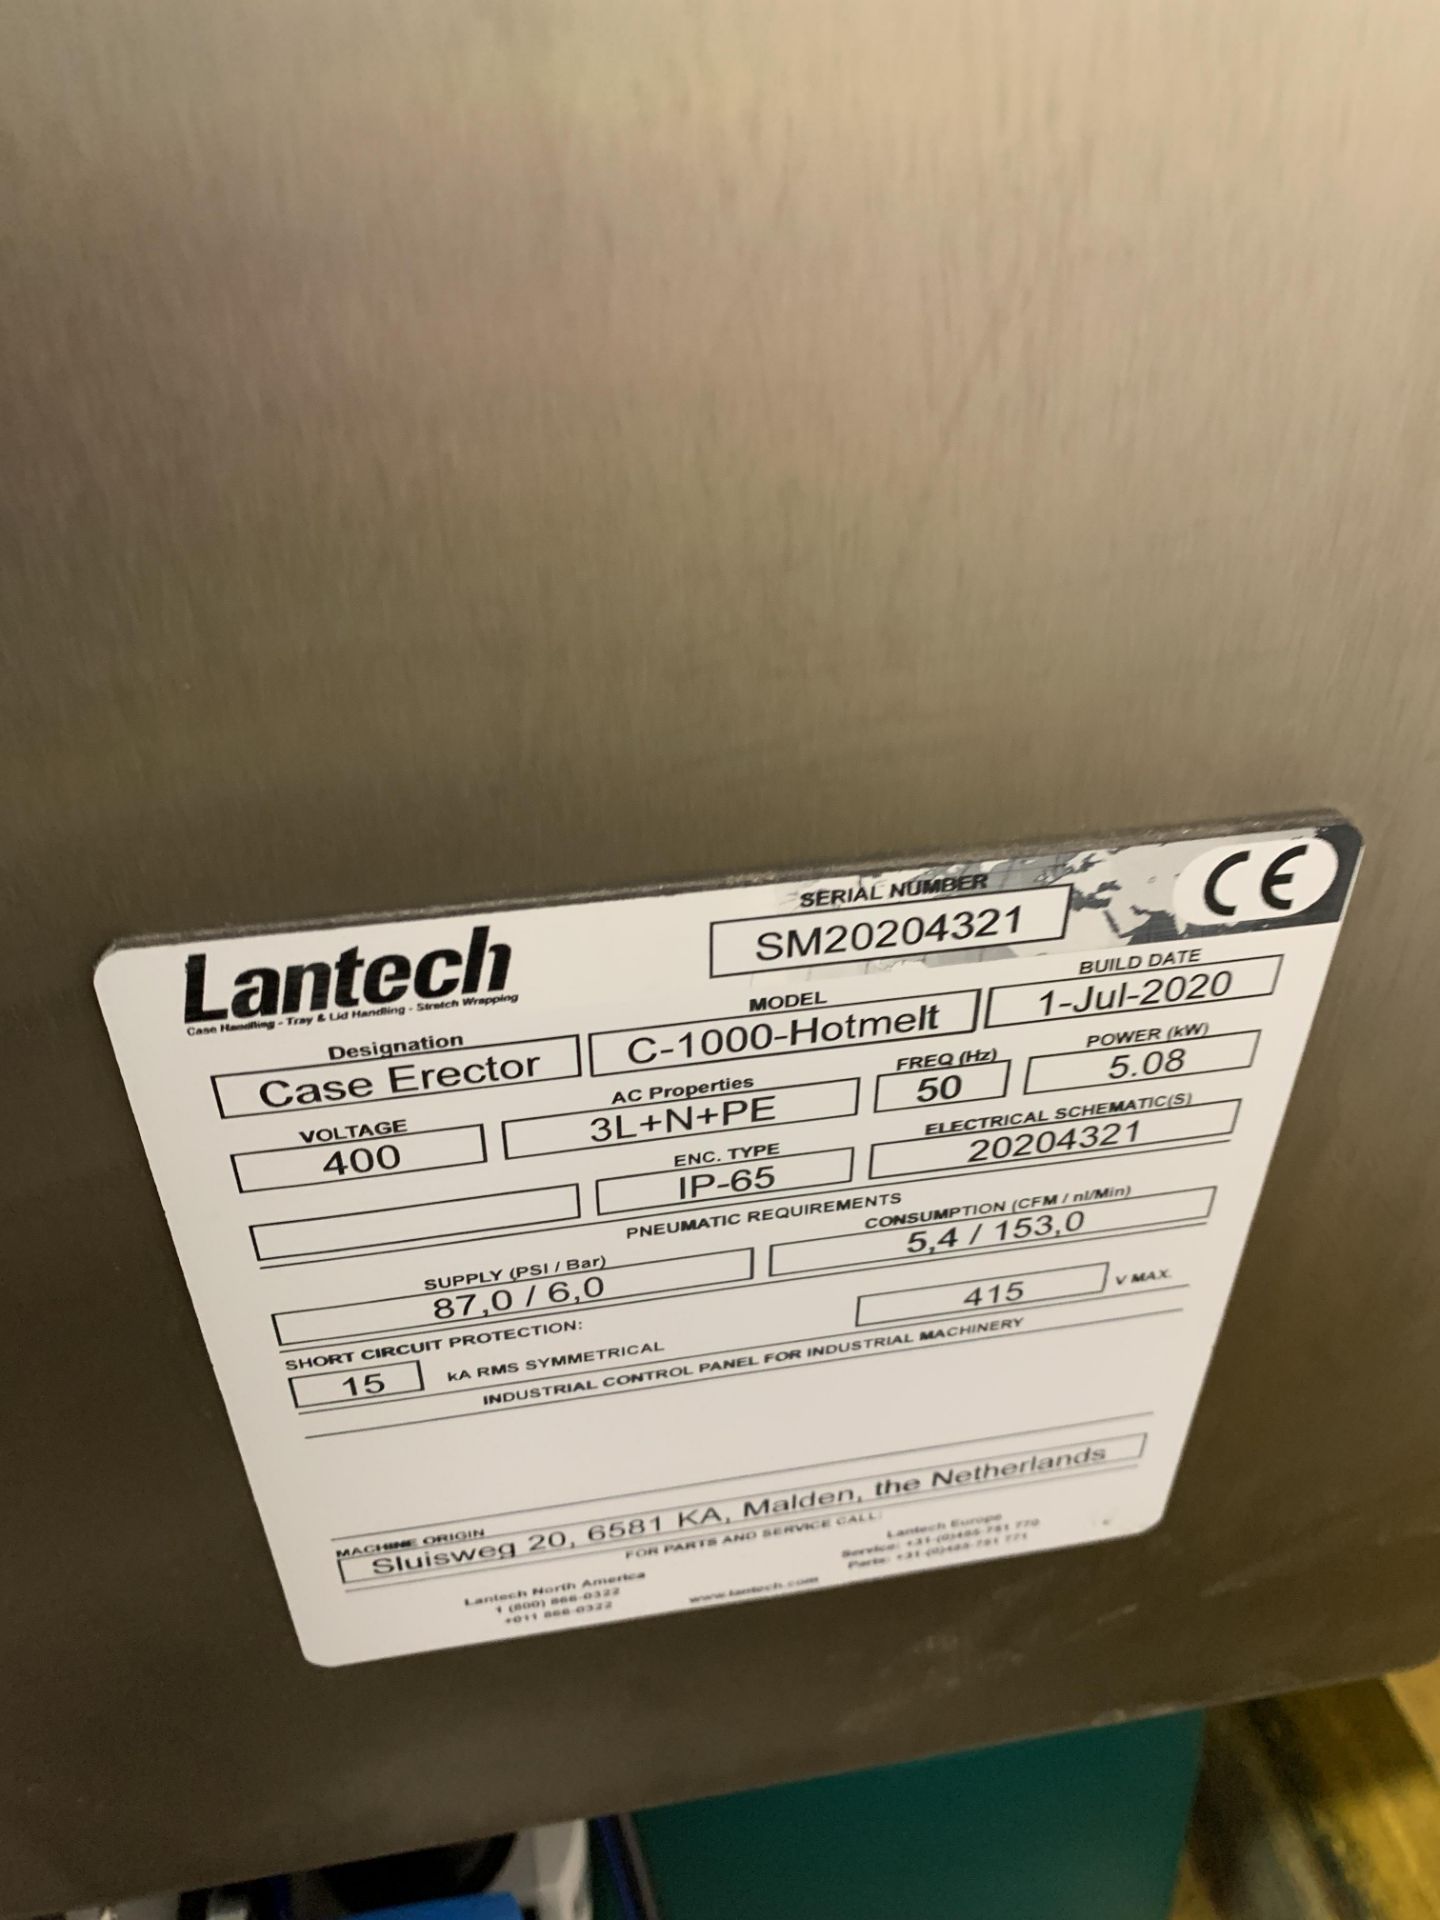 Lantech C-1000-Hotmelt case erector (2020) - Image 2 of 3